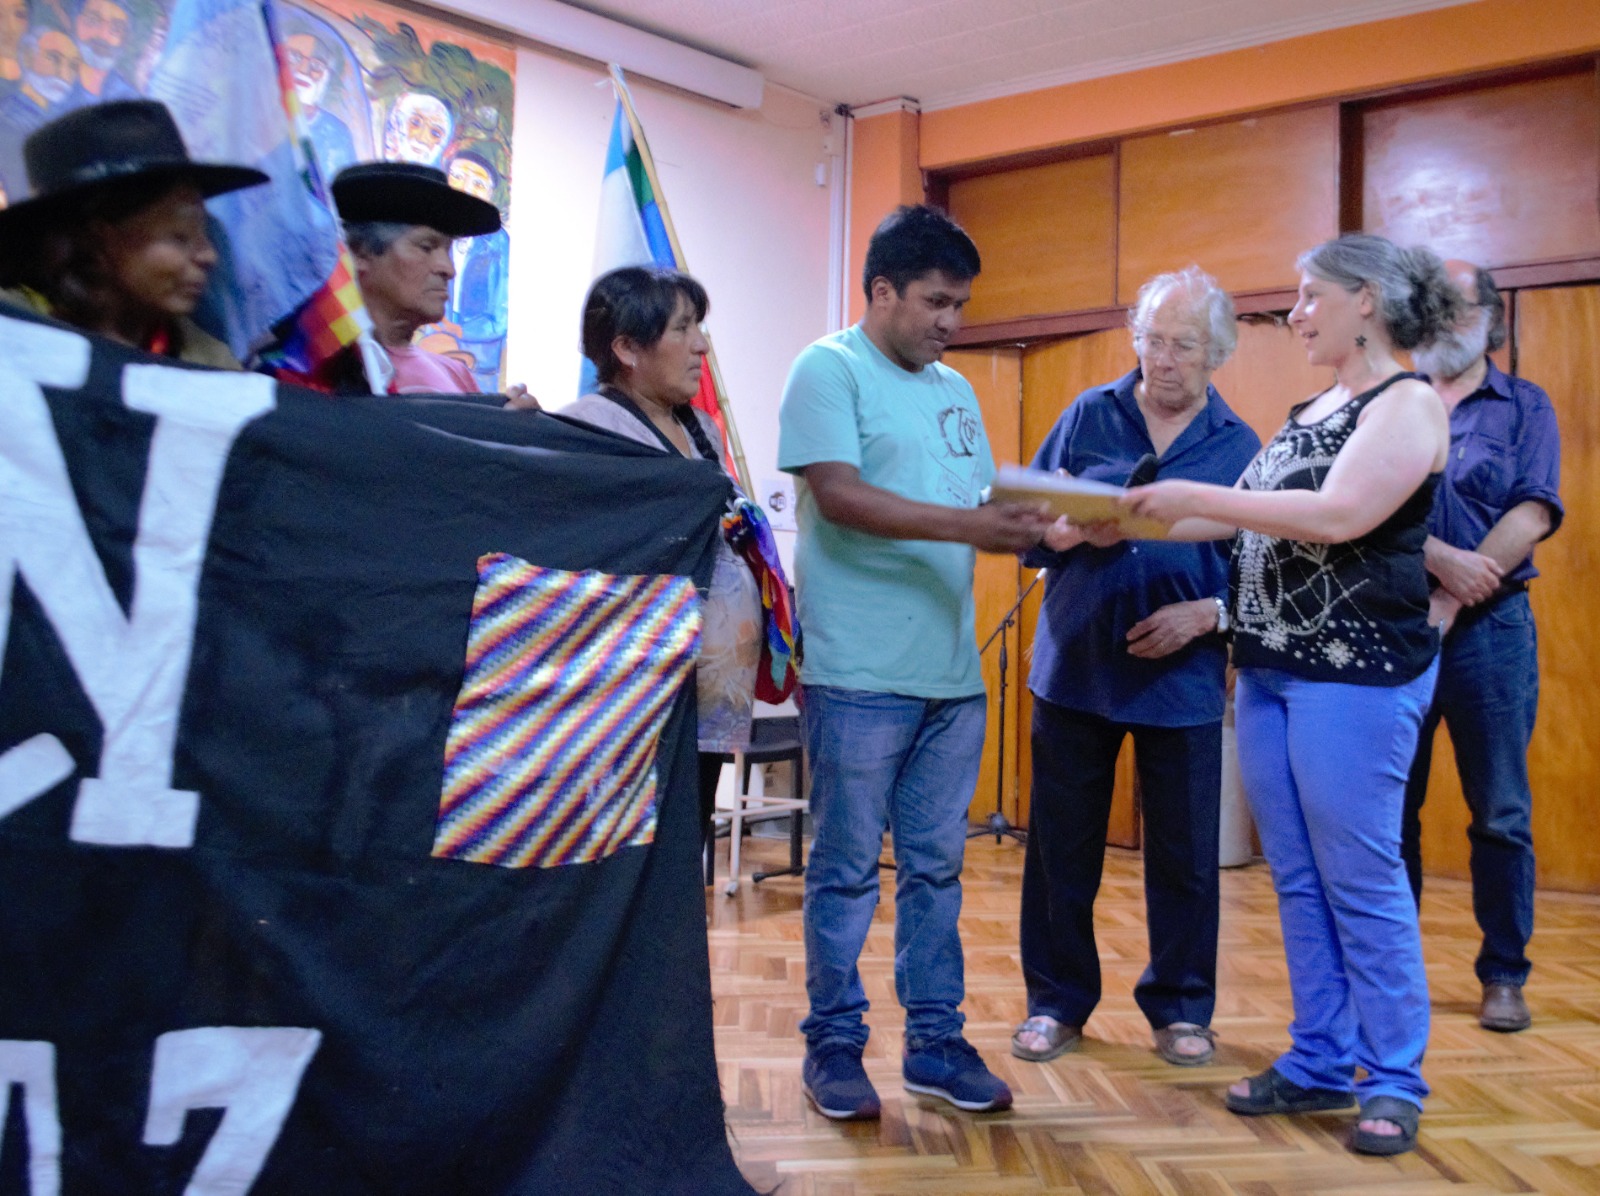 Informe de la comisión de recepción y análisis de denuncias sobre violencia institucional en la Provincia de Jujuy